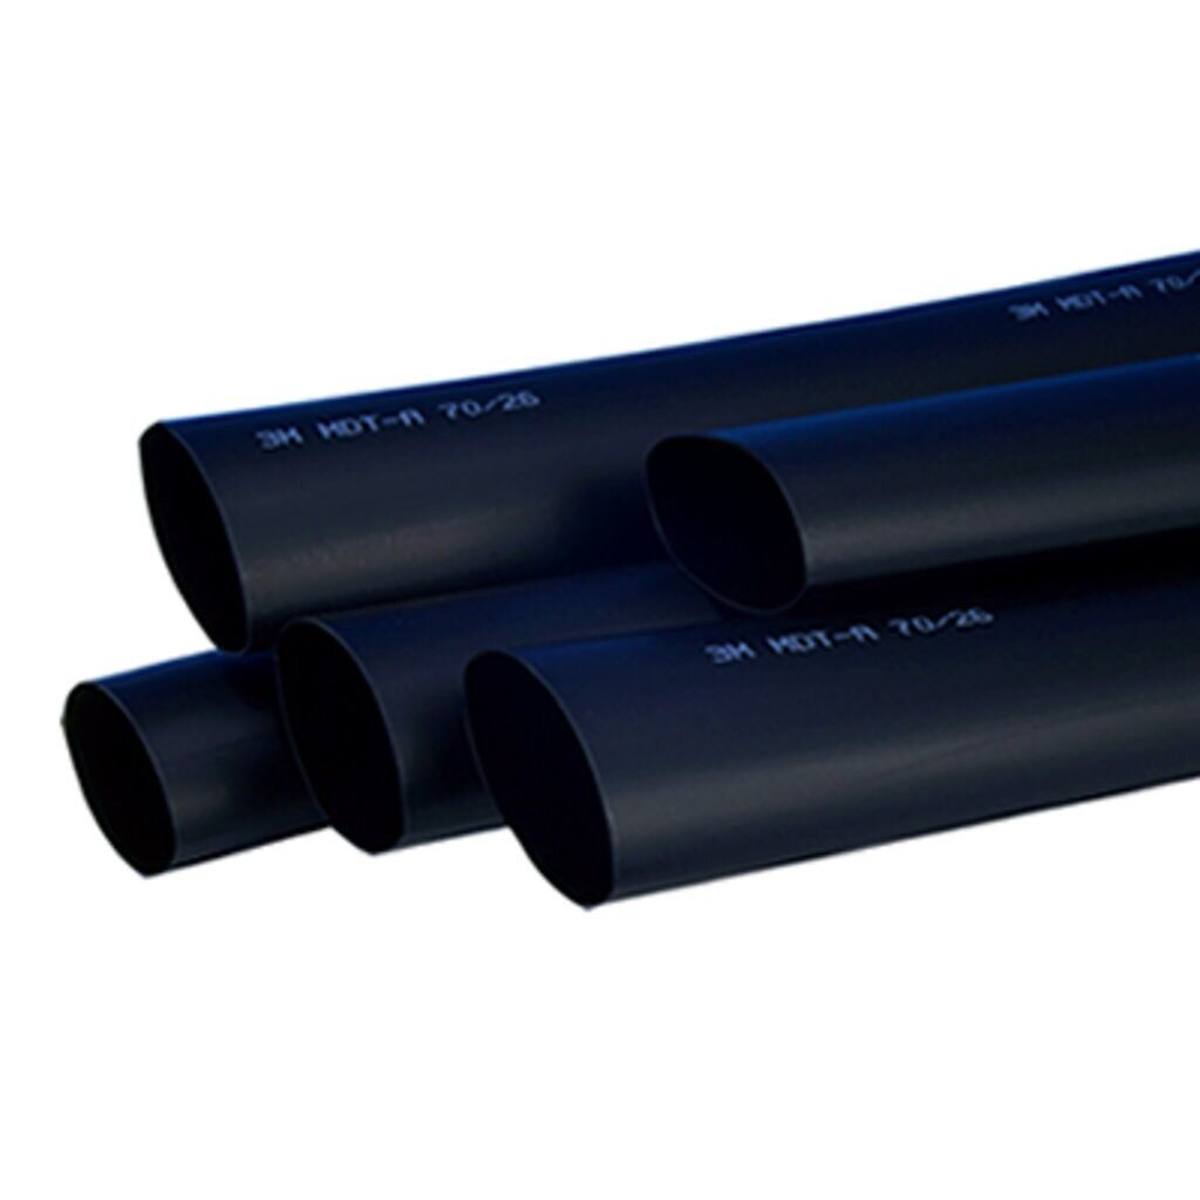  3M HDT-A Paksuseinäinen lämpökutisteputki liimalla, musta, 38/12 mm, 1 m